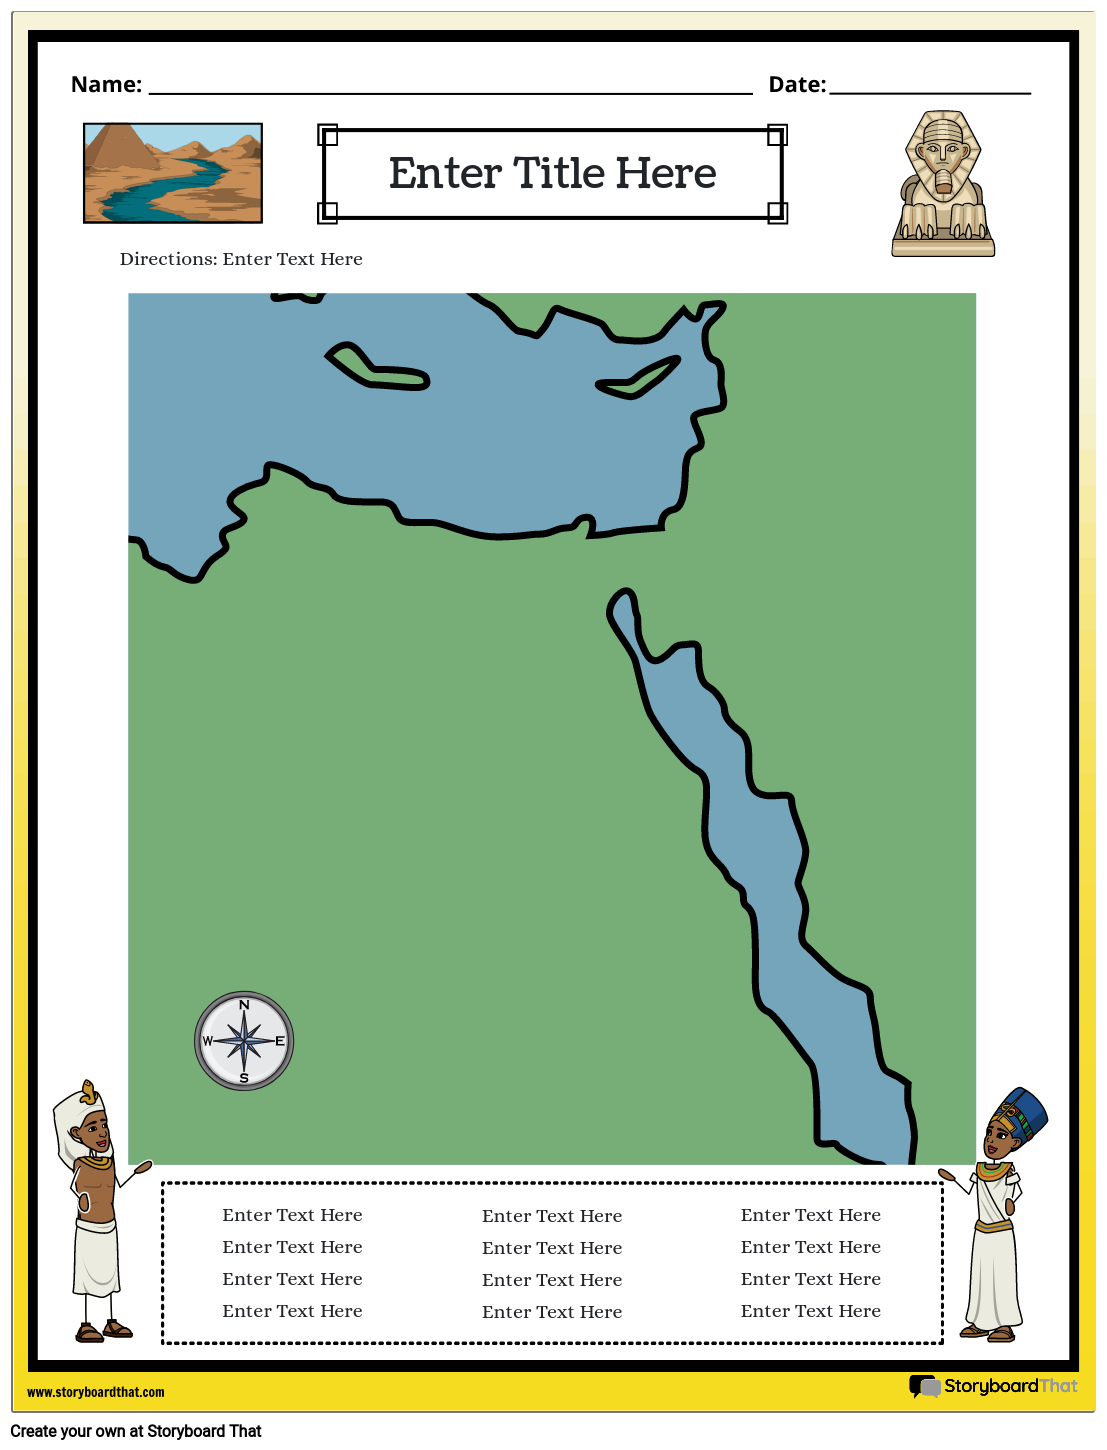 Muinaisen Egyptin Kartta